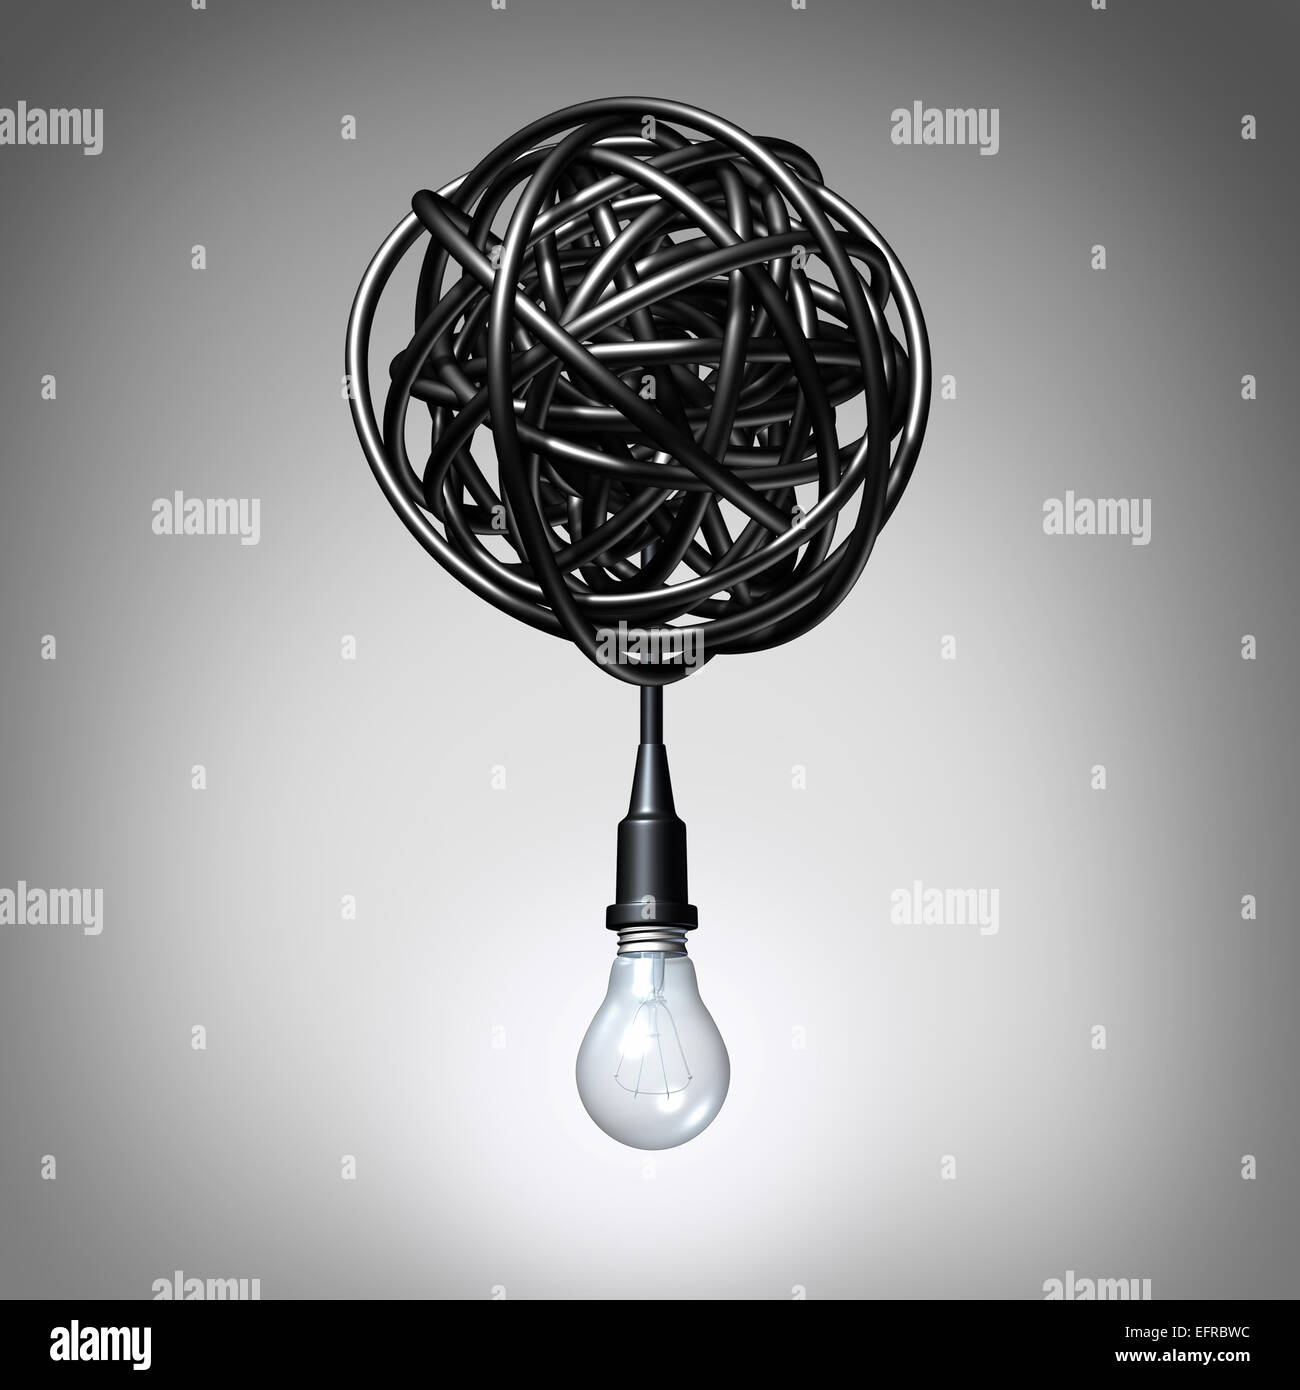 Kreative Beratung Konzept als eine Glühlampe oder Glühbirne aus ein wirres Chaos von elektrischen Stricke als eine Metapher und Kreativität Auflösung Erfolgsgrad herabhängen. Stockfoto